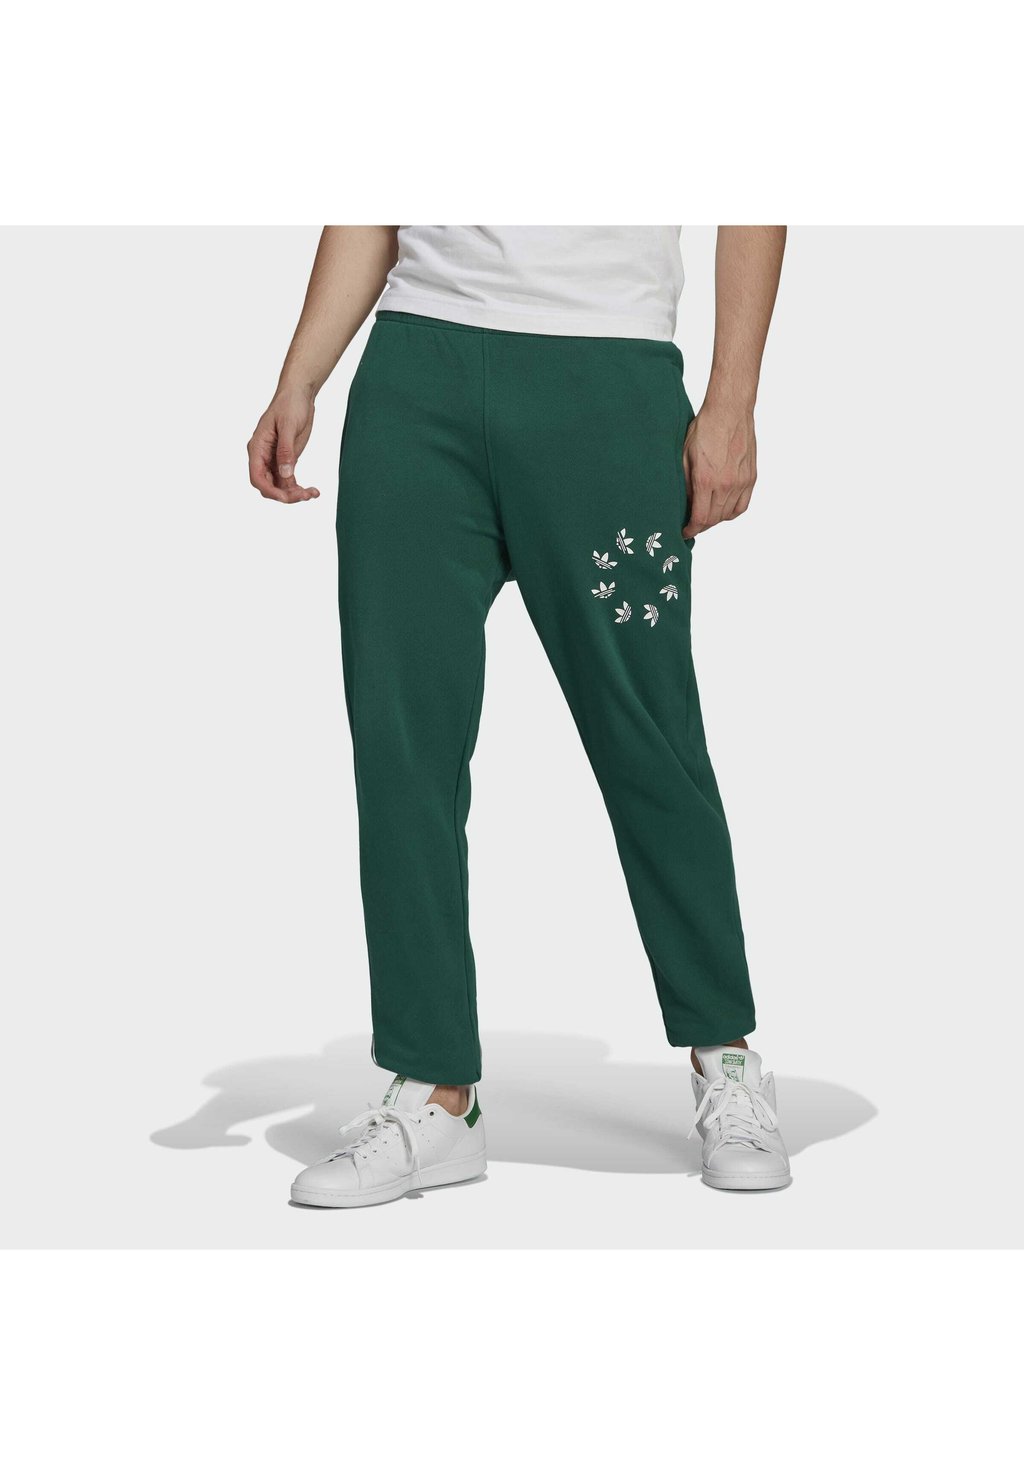 Спортивные брюки adidas Originals, зеленые